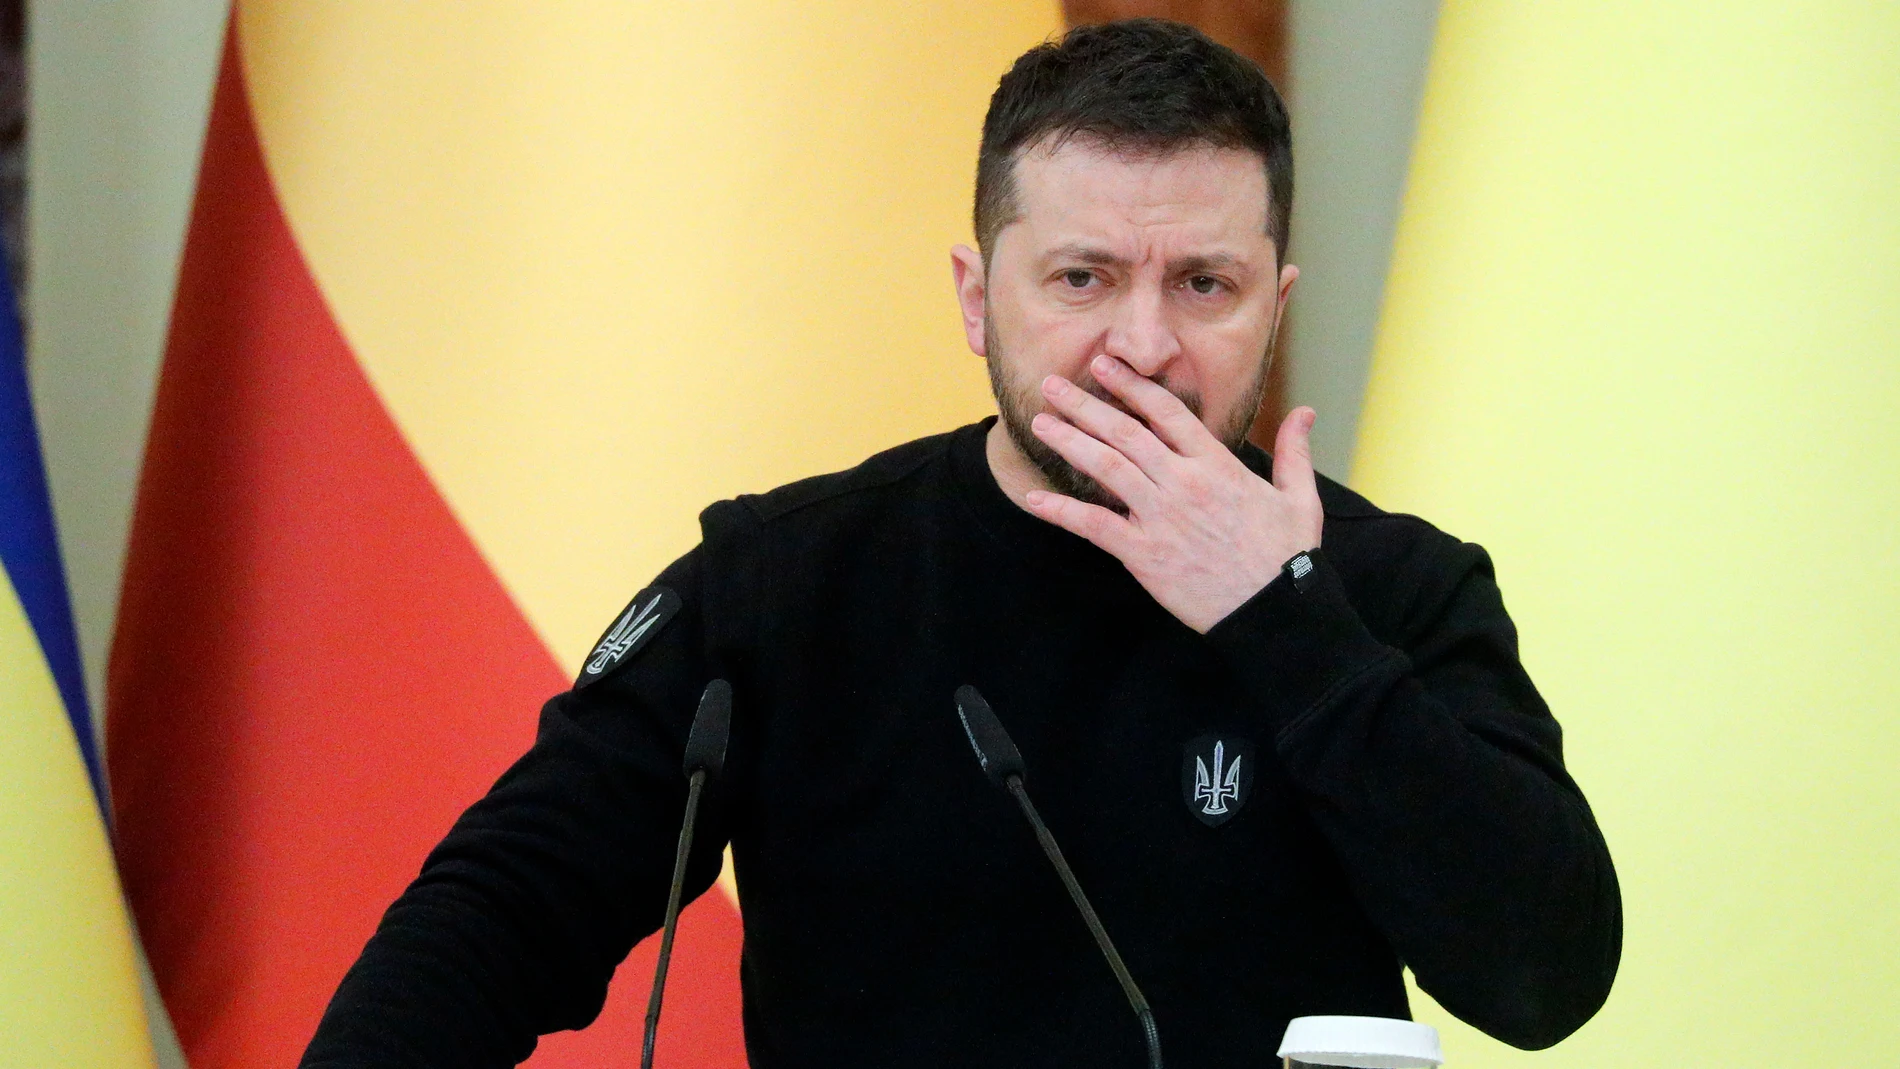 Guerra Rusia Ucrania, en directo: Zelenski hace balance de "un año de dolor, tristeza, fe y unidad" 